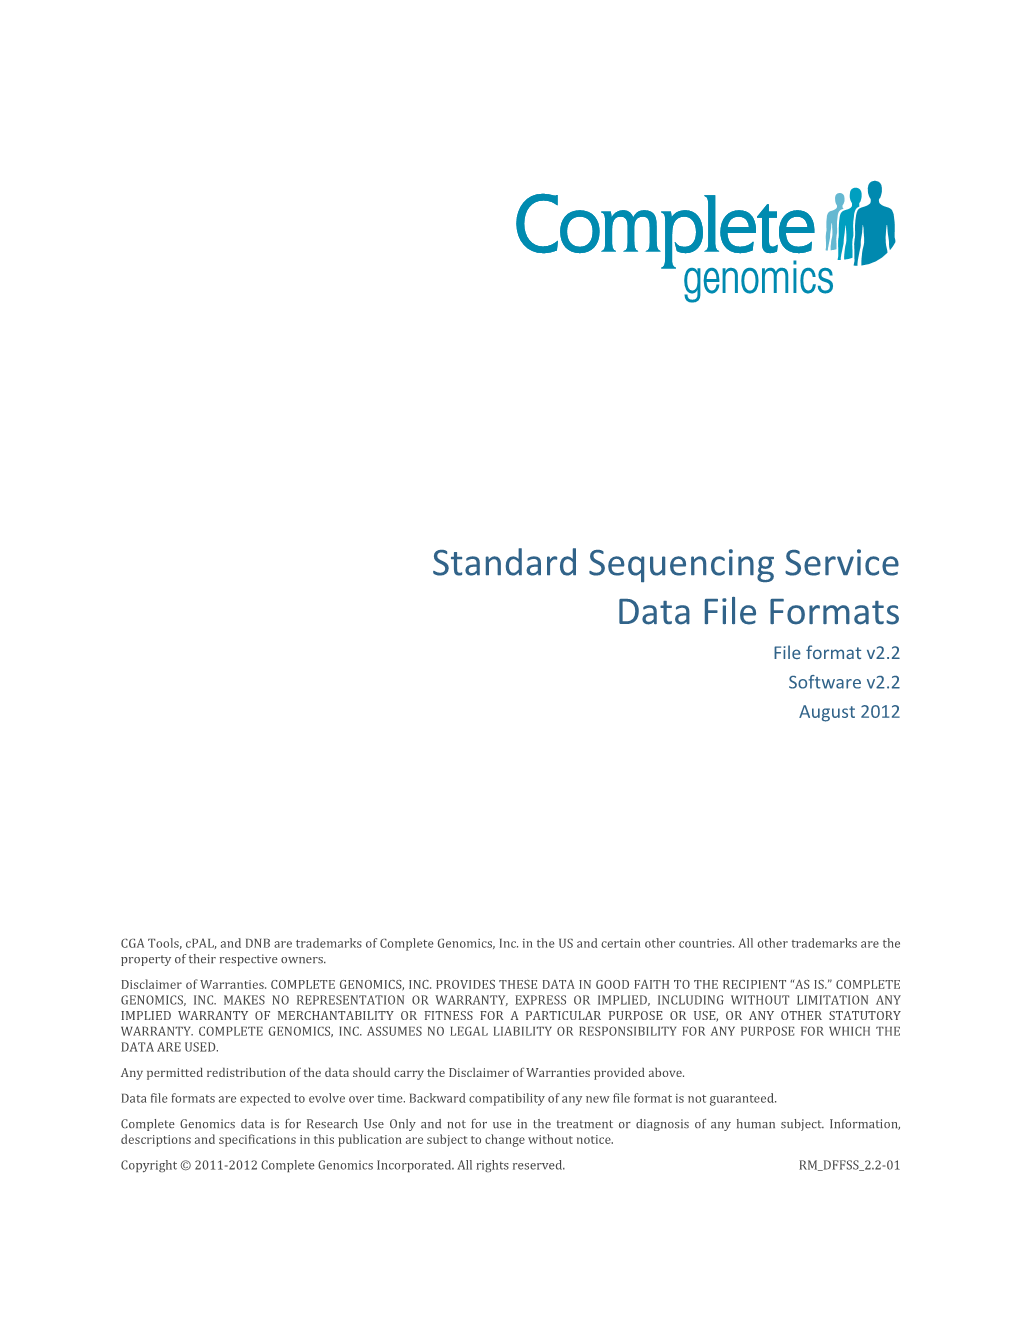 Standard Sequencing Service Data File Formats File Format V2.2 Software V2.2 August 2012